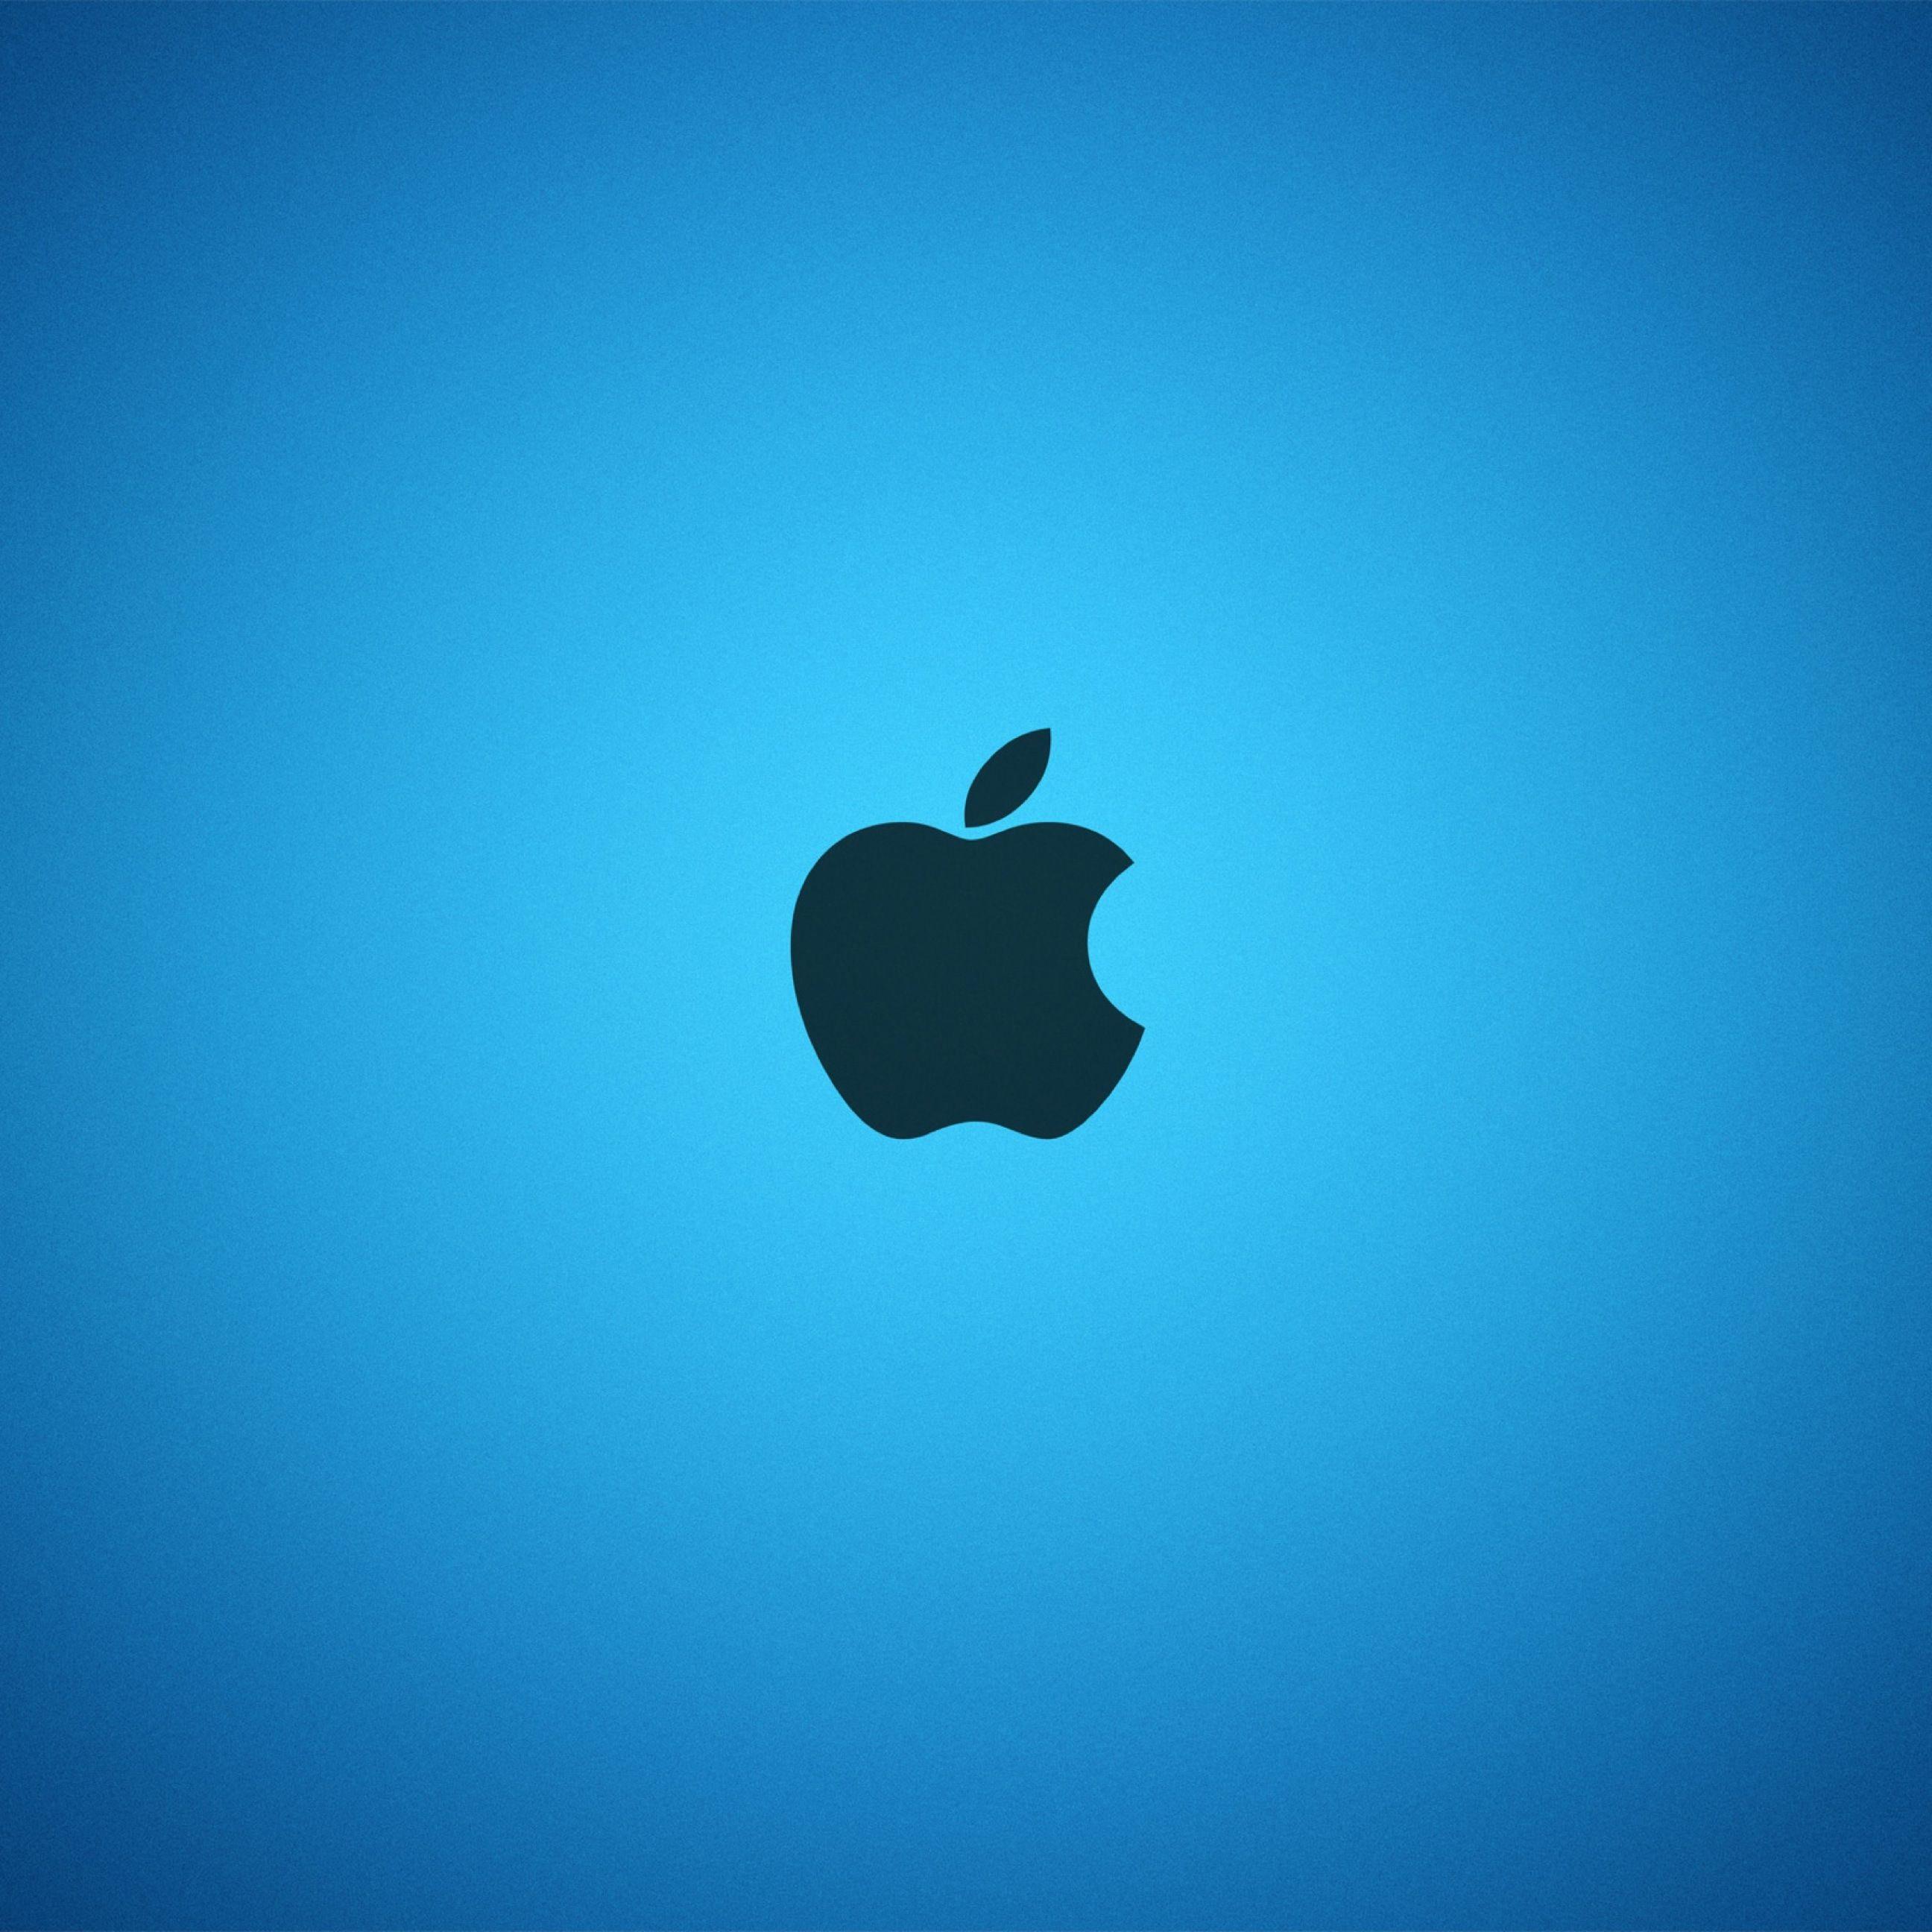 Blueand White Apple Logo - Apple logo blue | wallpaper.sc iPhone6sPlus